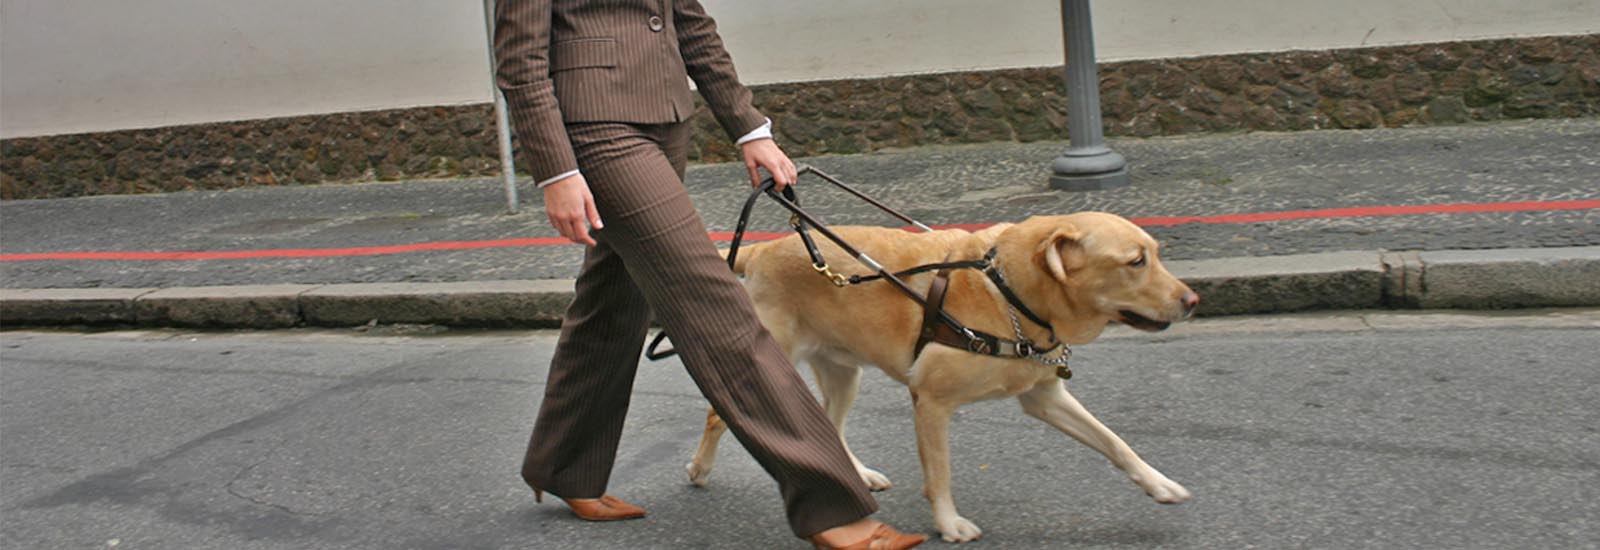 Blind lady walking dog